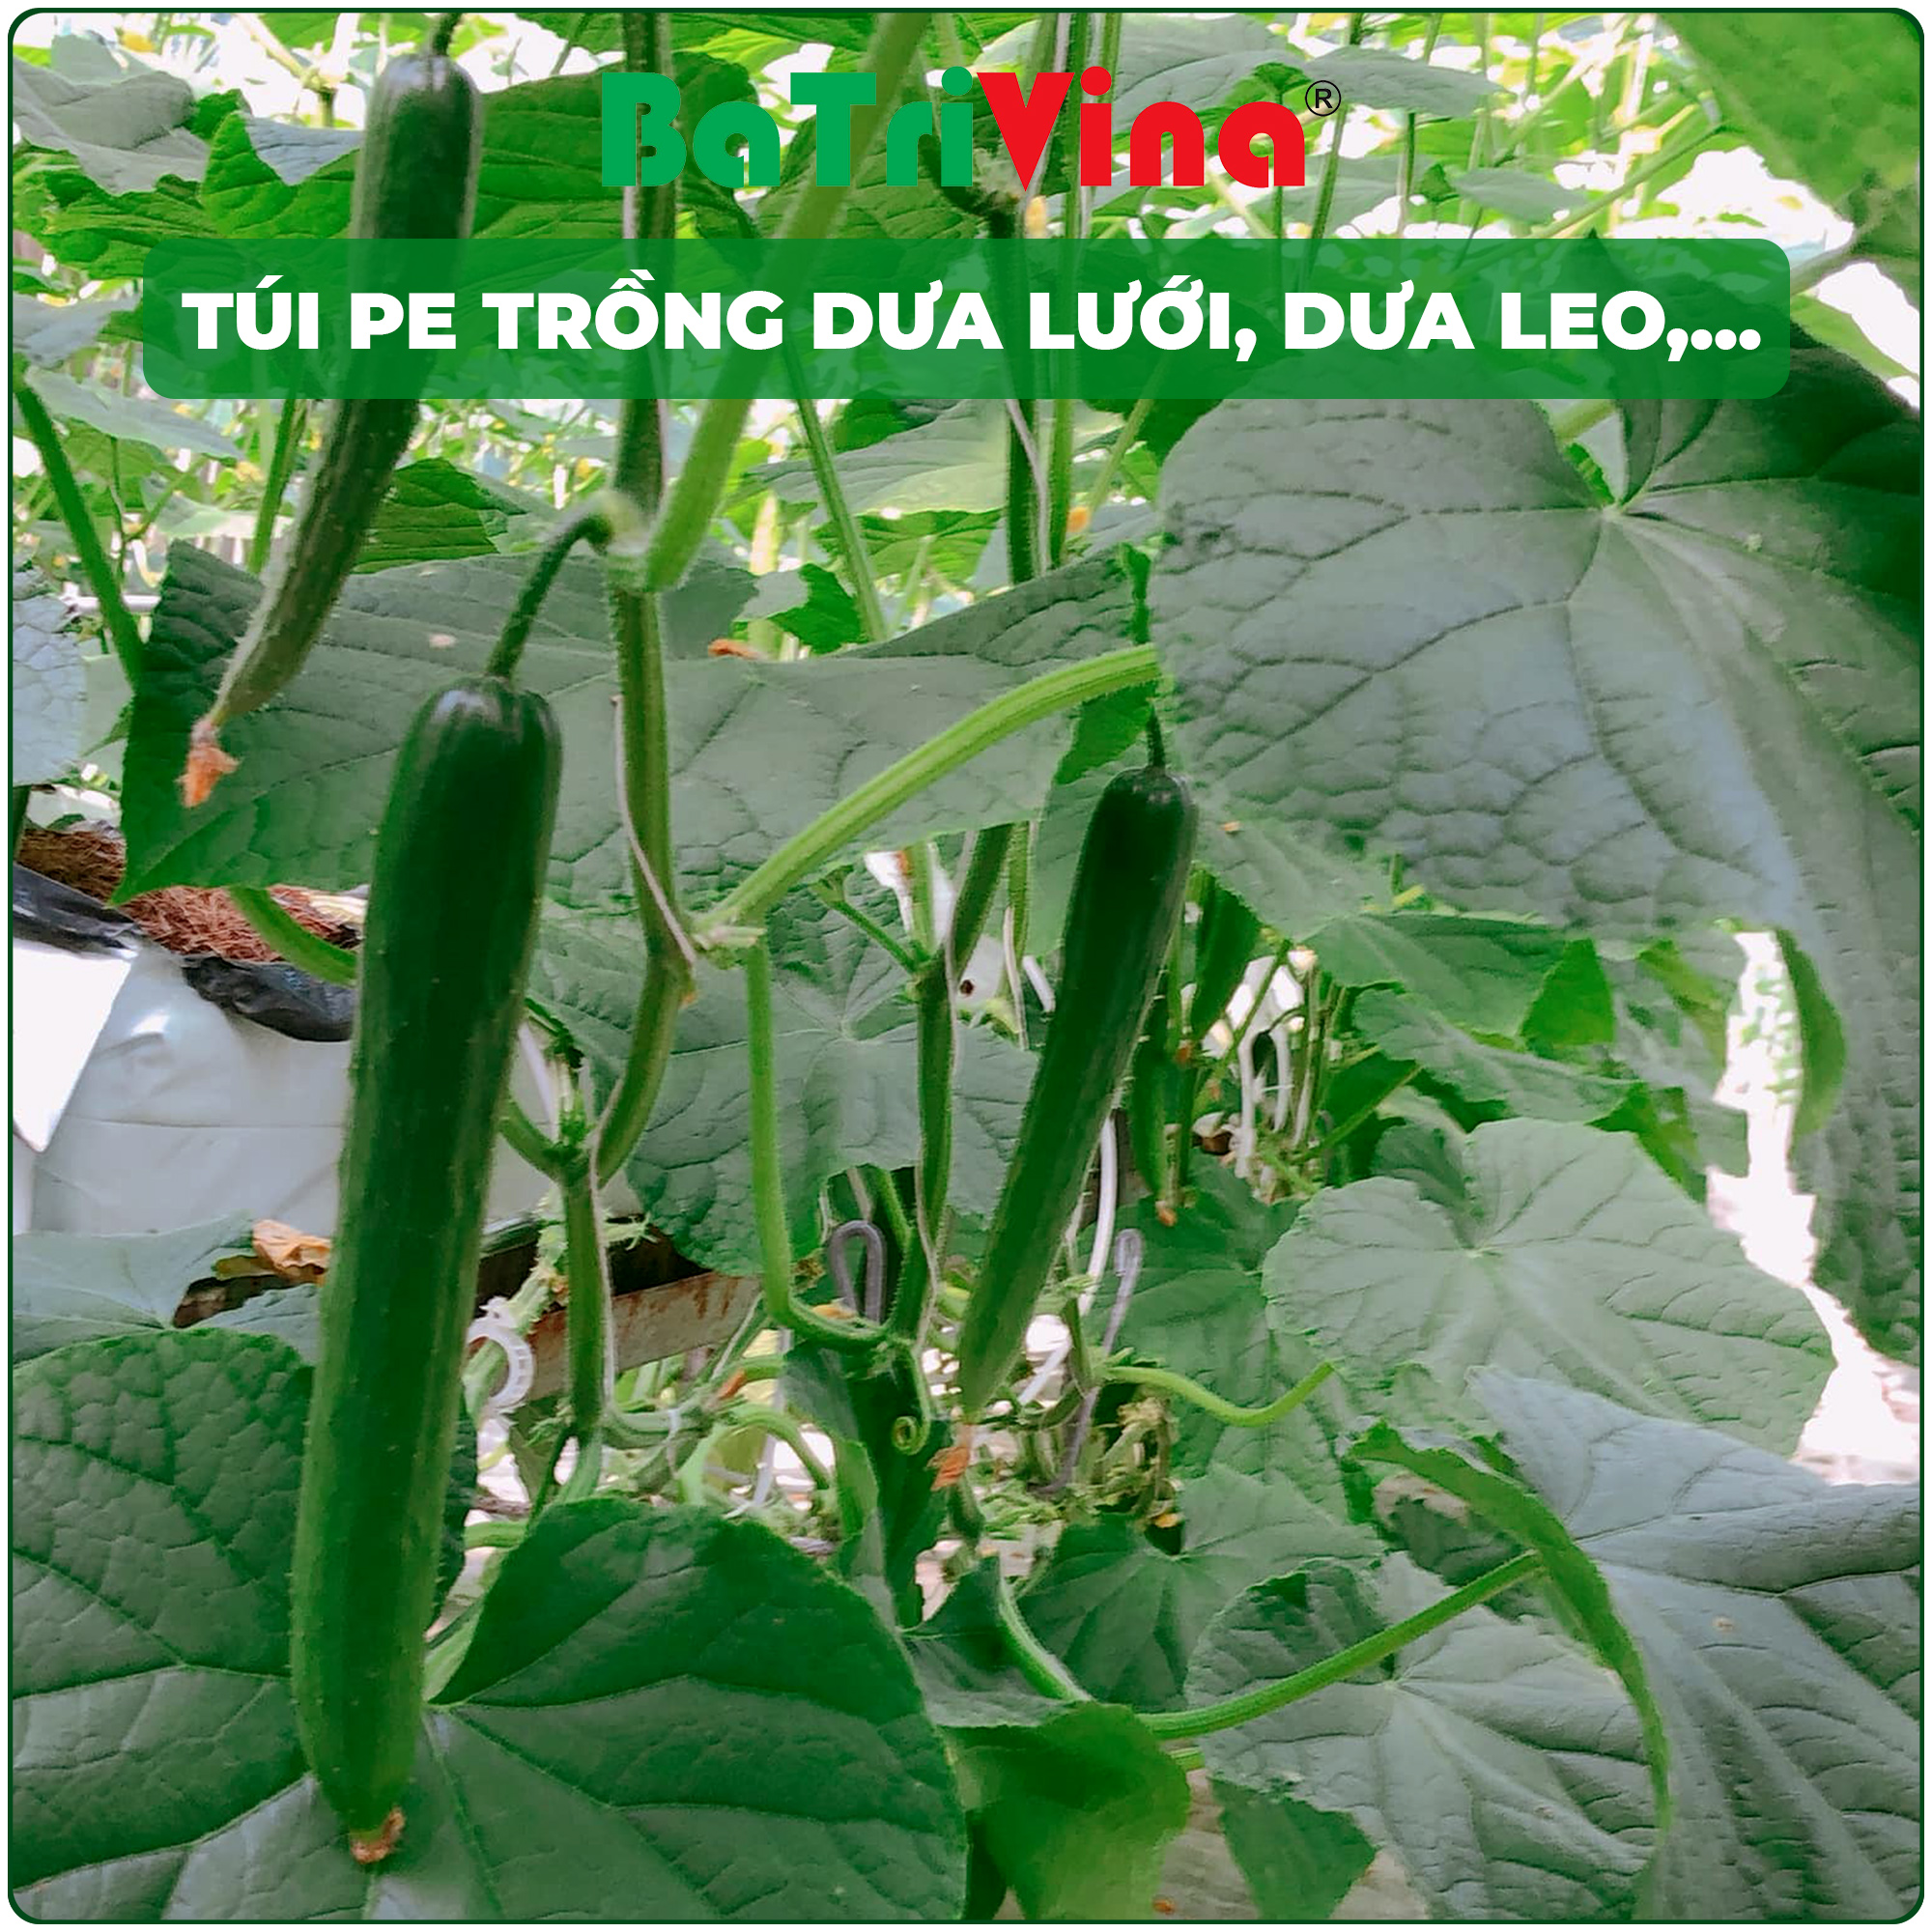 Túi PE 2 lớp trắng đen, trồng cây dưới lưới, dưa leo, cà chua,... nông nghiệp nhà màng (Giá theo 1kg)